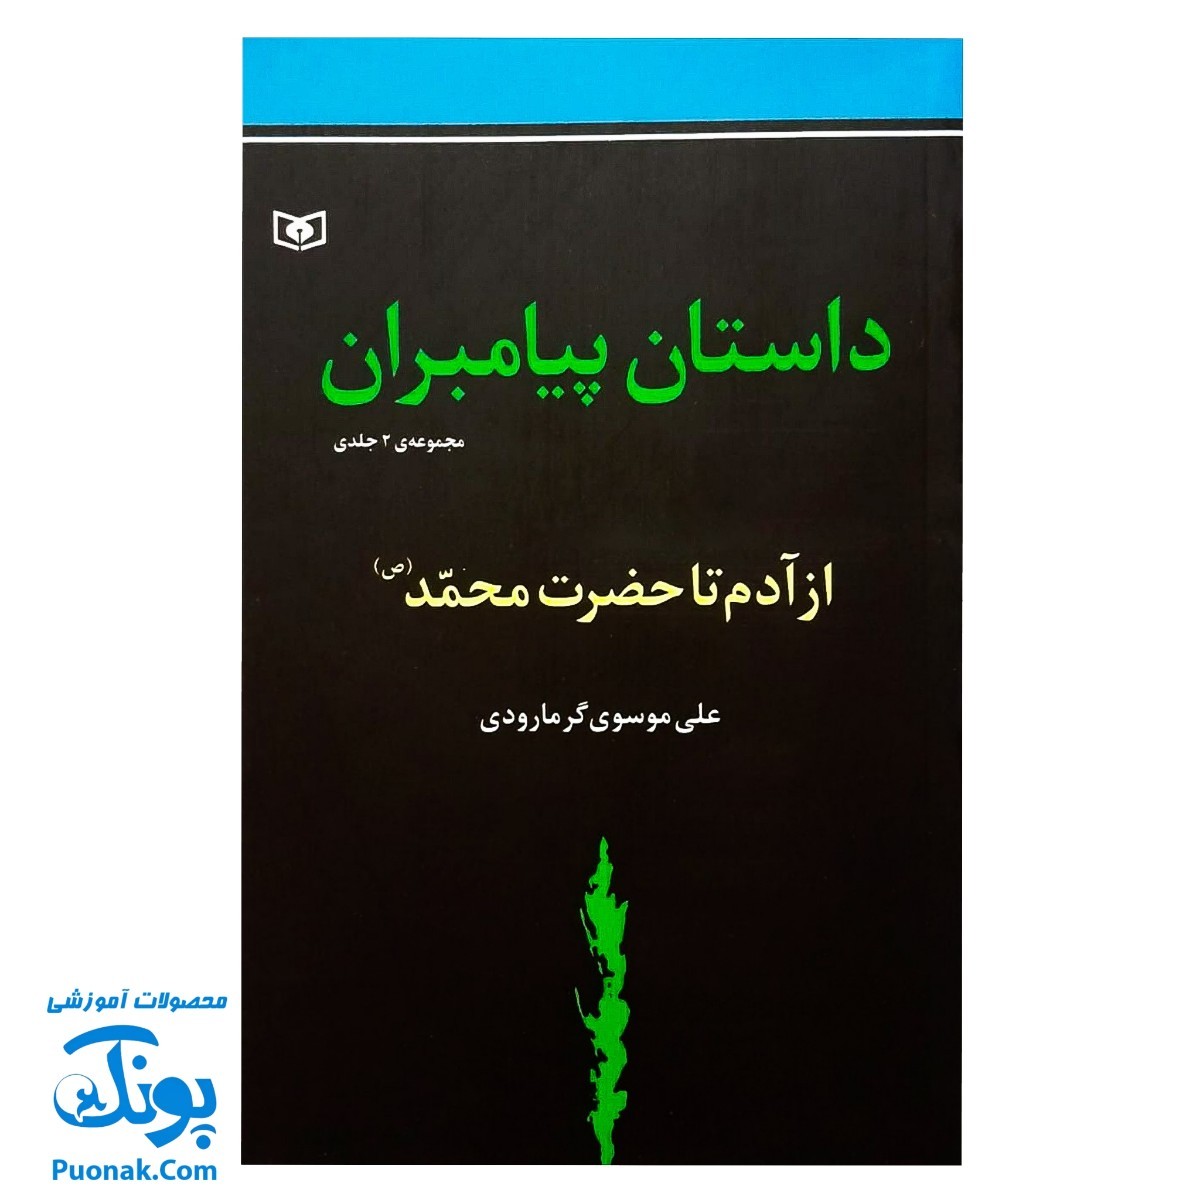 کتاب داستان پیامبران مجموعه ۲ جلدی از آدم تا حضرت محمد صل الله علیه و آله و سلم